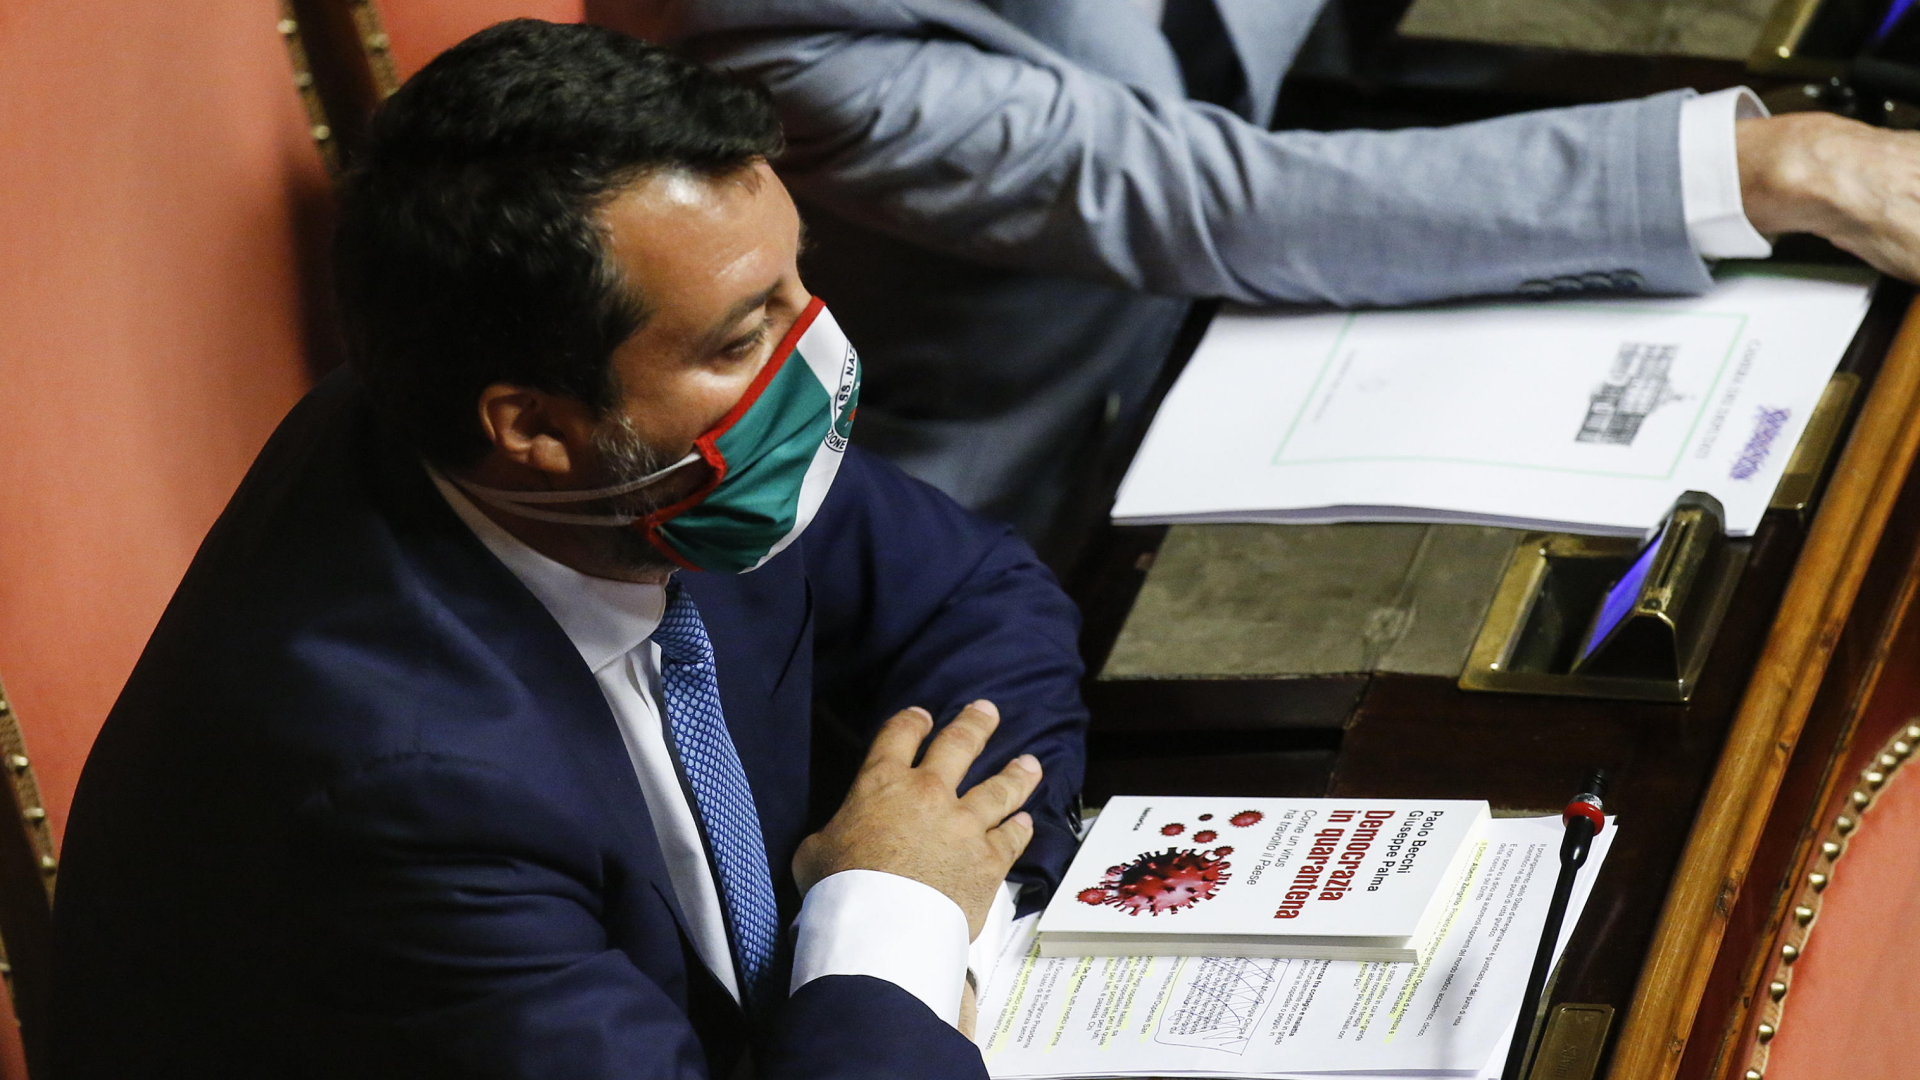 Matteo Salvini im Parlament mit Mundschutz in den Farben der italienischen Flagge | Bildquelle: FABIO FRUSTACI/EPA-EFE/Shutterst